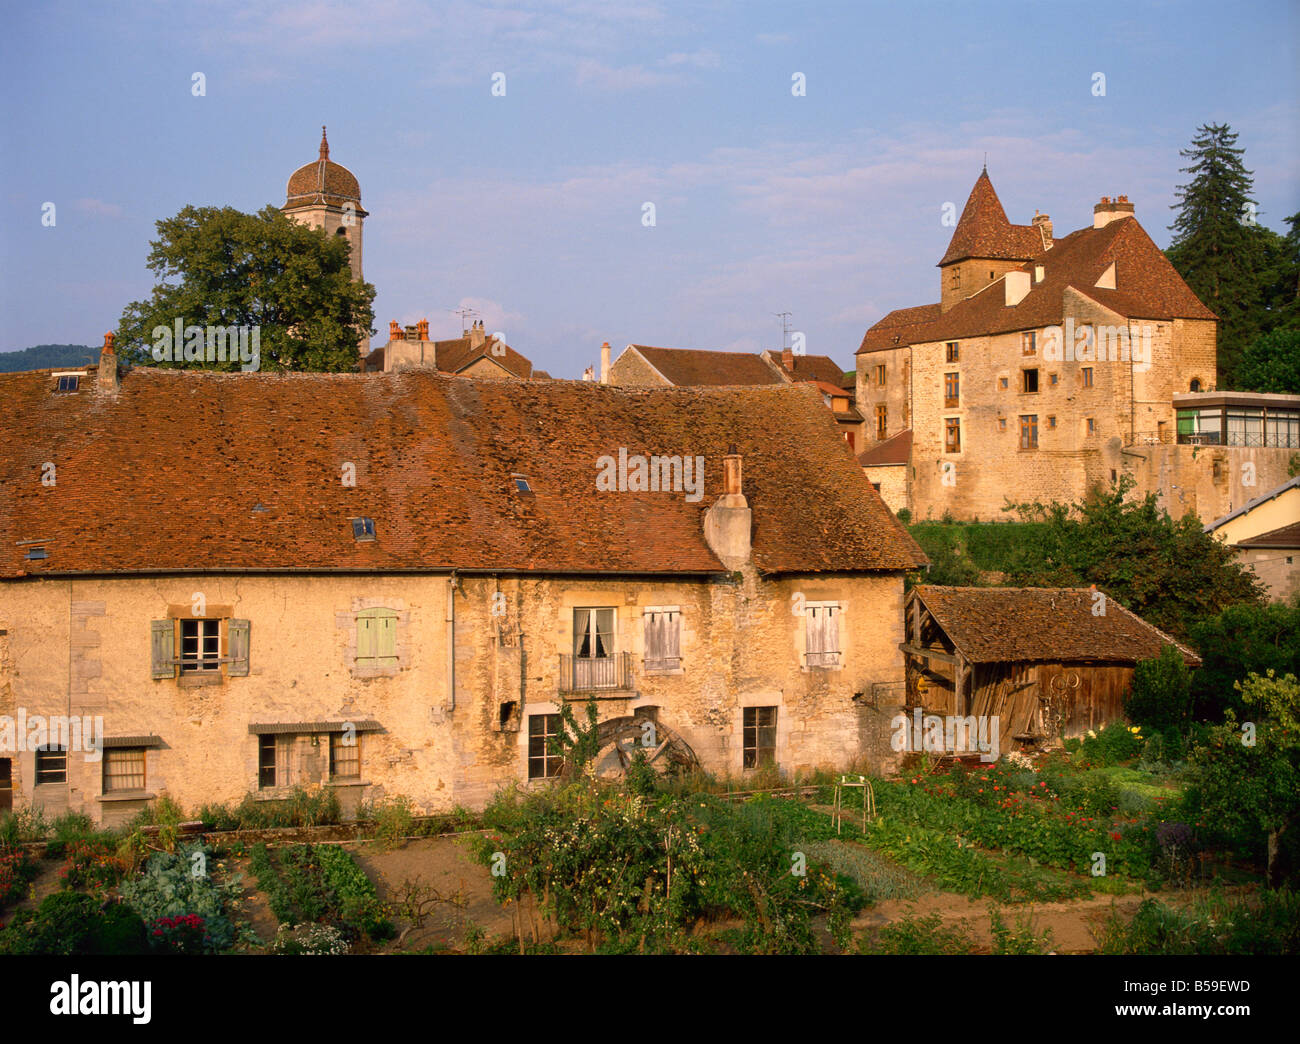 Maisons anciennes en pierre à Arbois, une ville associée à Pasteur, Franche-Comte, France Banque D'Images